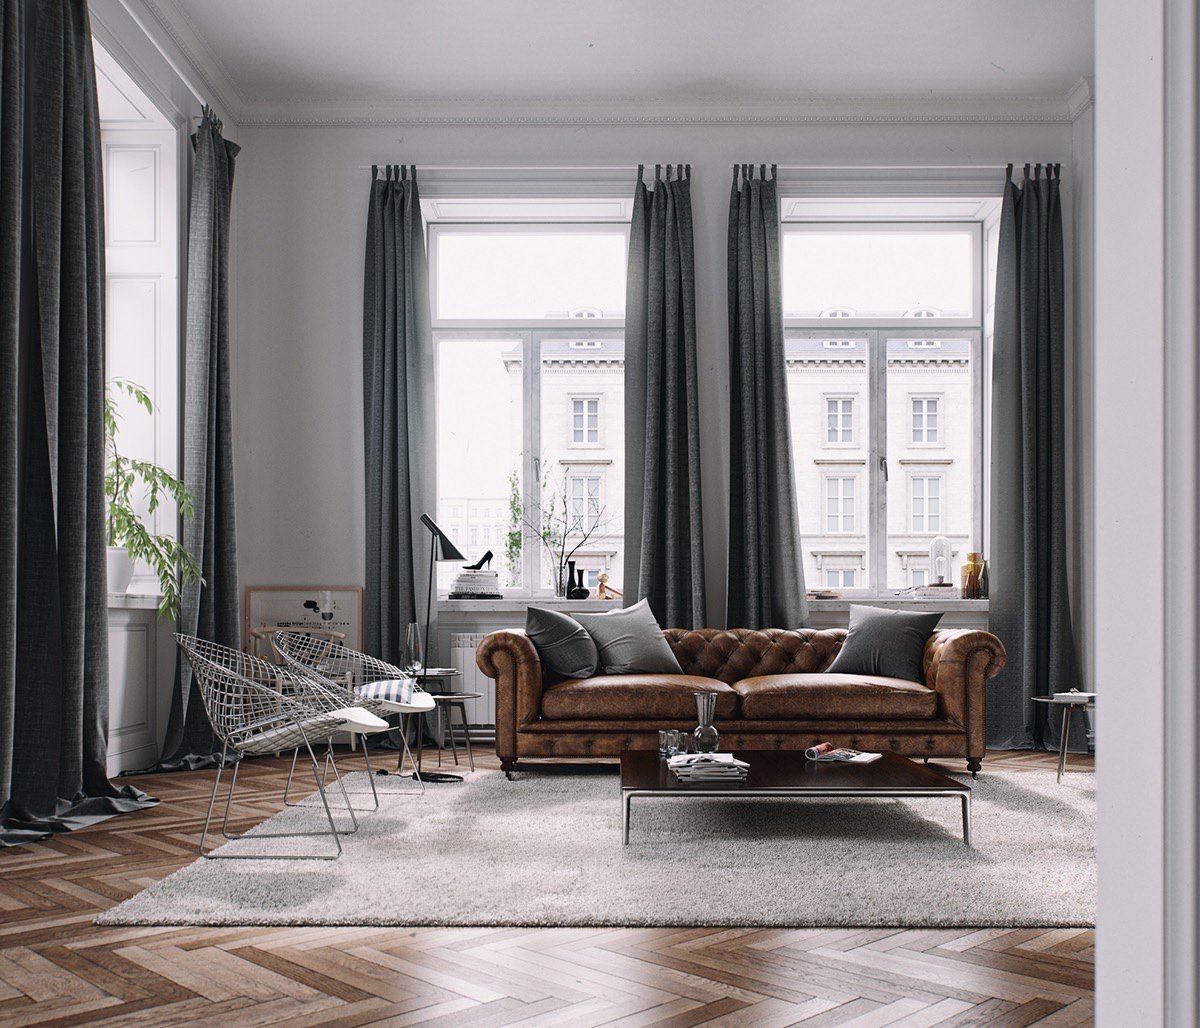 طراحی اتاق نشیمن مدرن با کفپوش چوبی، فرش پشمی، مبل چرمی، پرده های خاکستری که از بافت طبیعی در دکوراسیون آن استفاده شده است